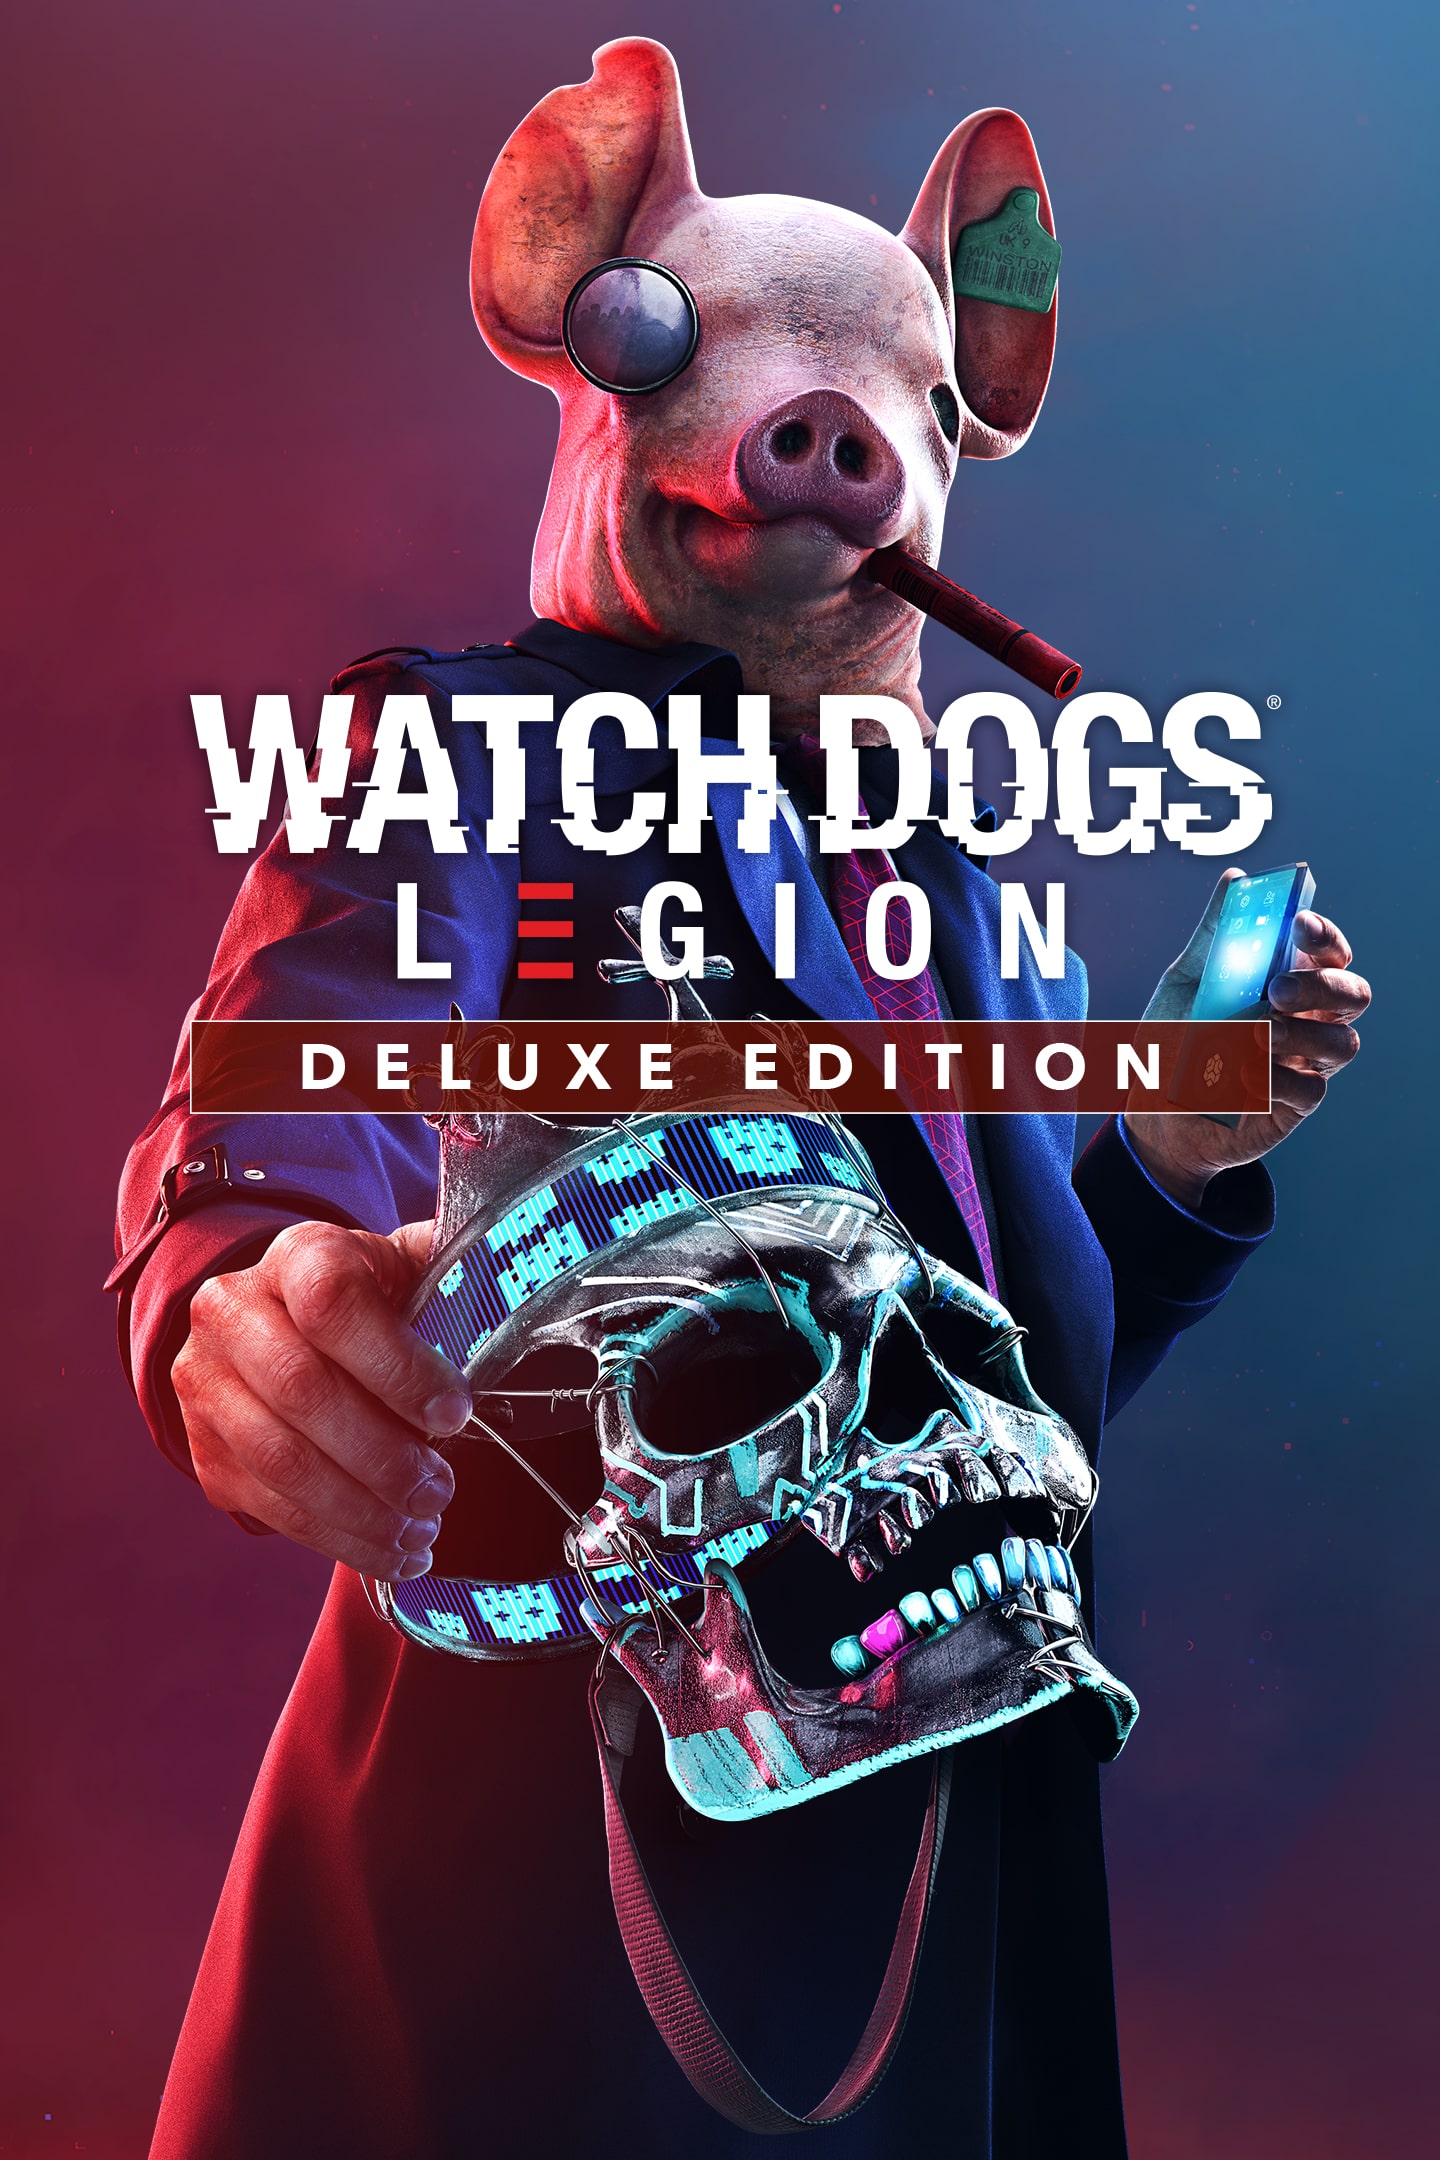 Como jogar Watch Dogs Legion e dicas para mandar bem no game da